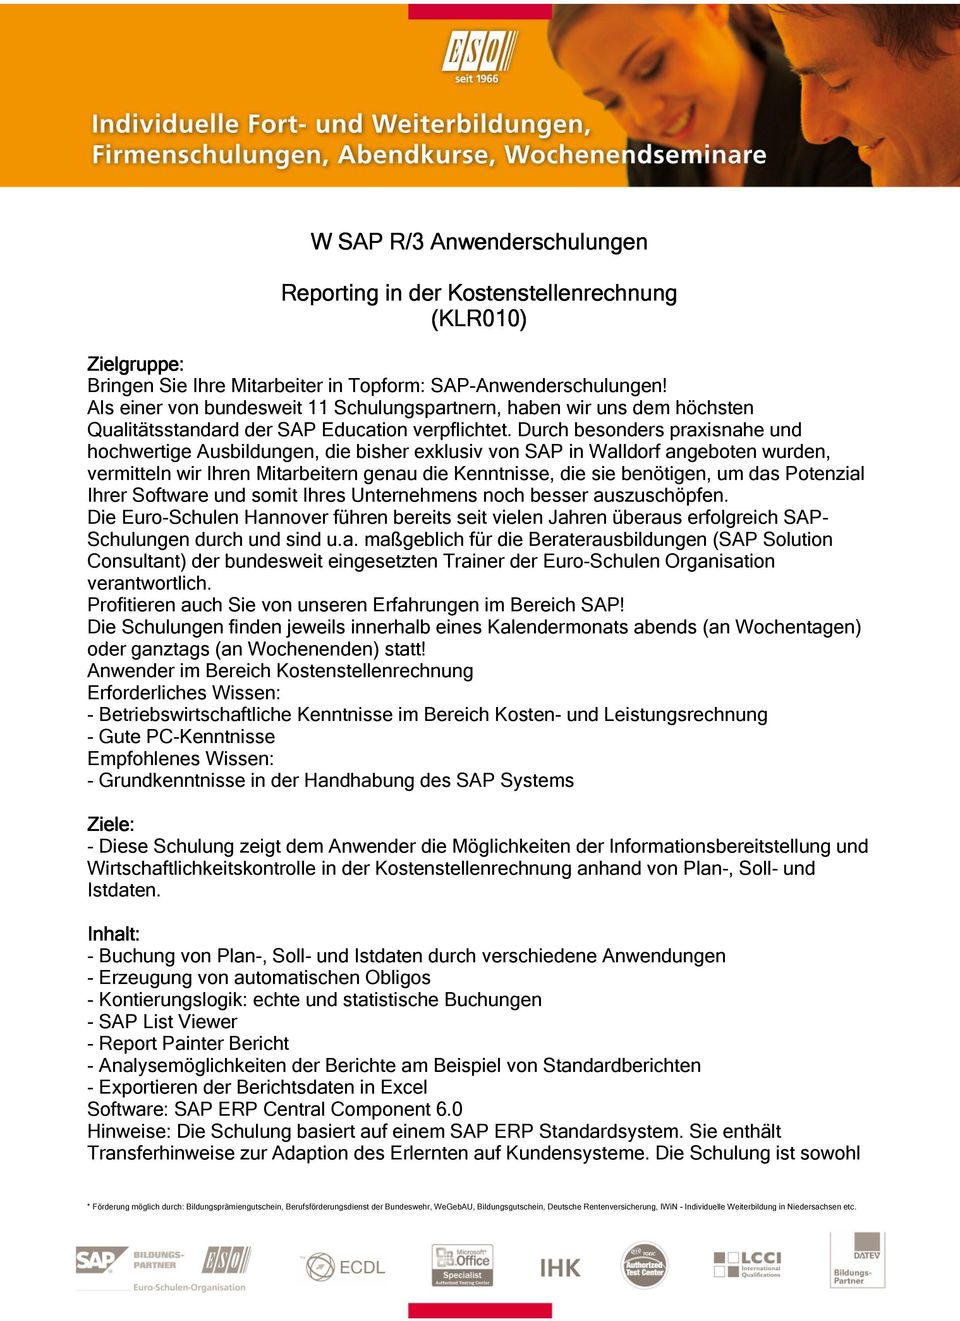 Durch besonders praxisnahe und hochwertige Ausbildungen, die bisher exklusiv von SAP in Walldorf angeboten wurden, vermitteln wir Ihren Mitarbeitern genau die Kenntnisse, die sie benötigen, um das